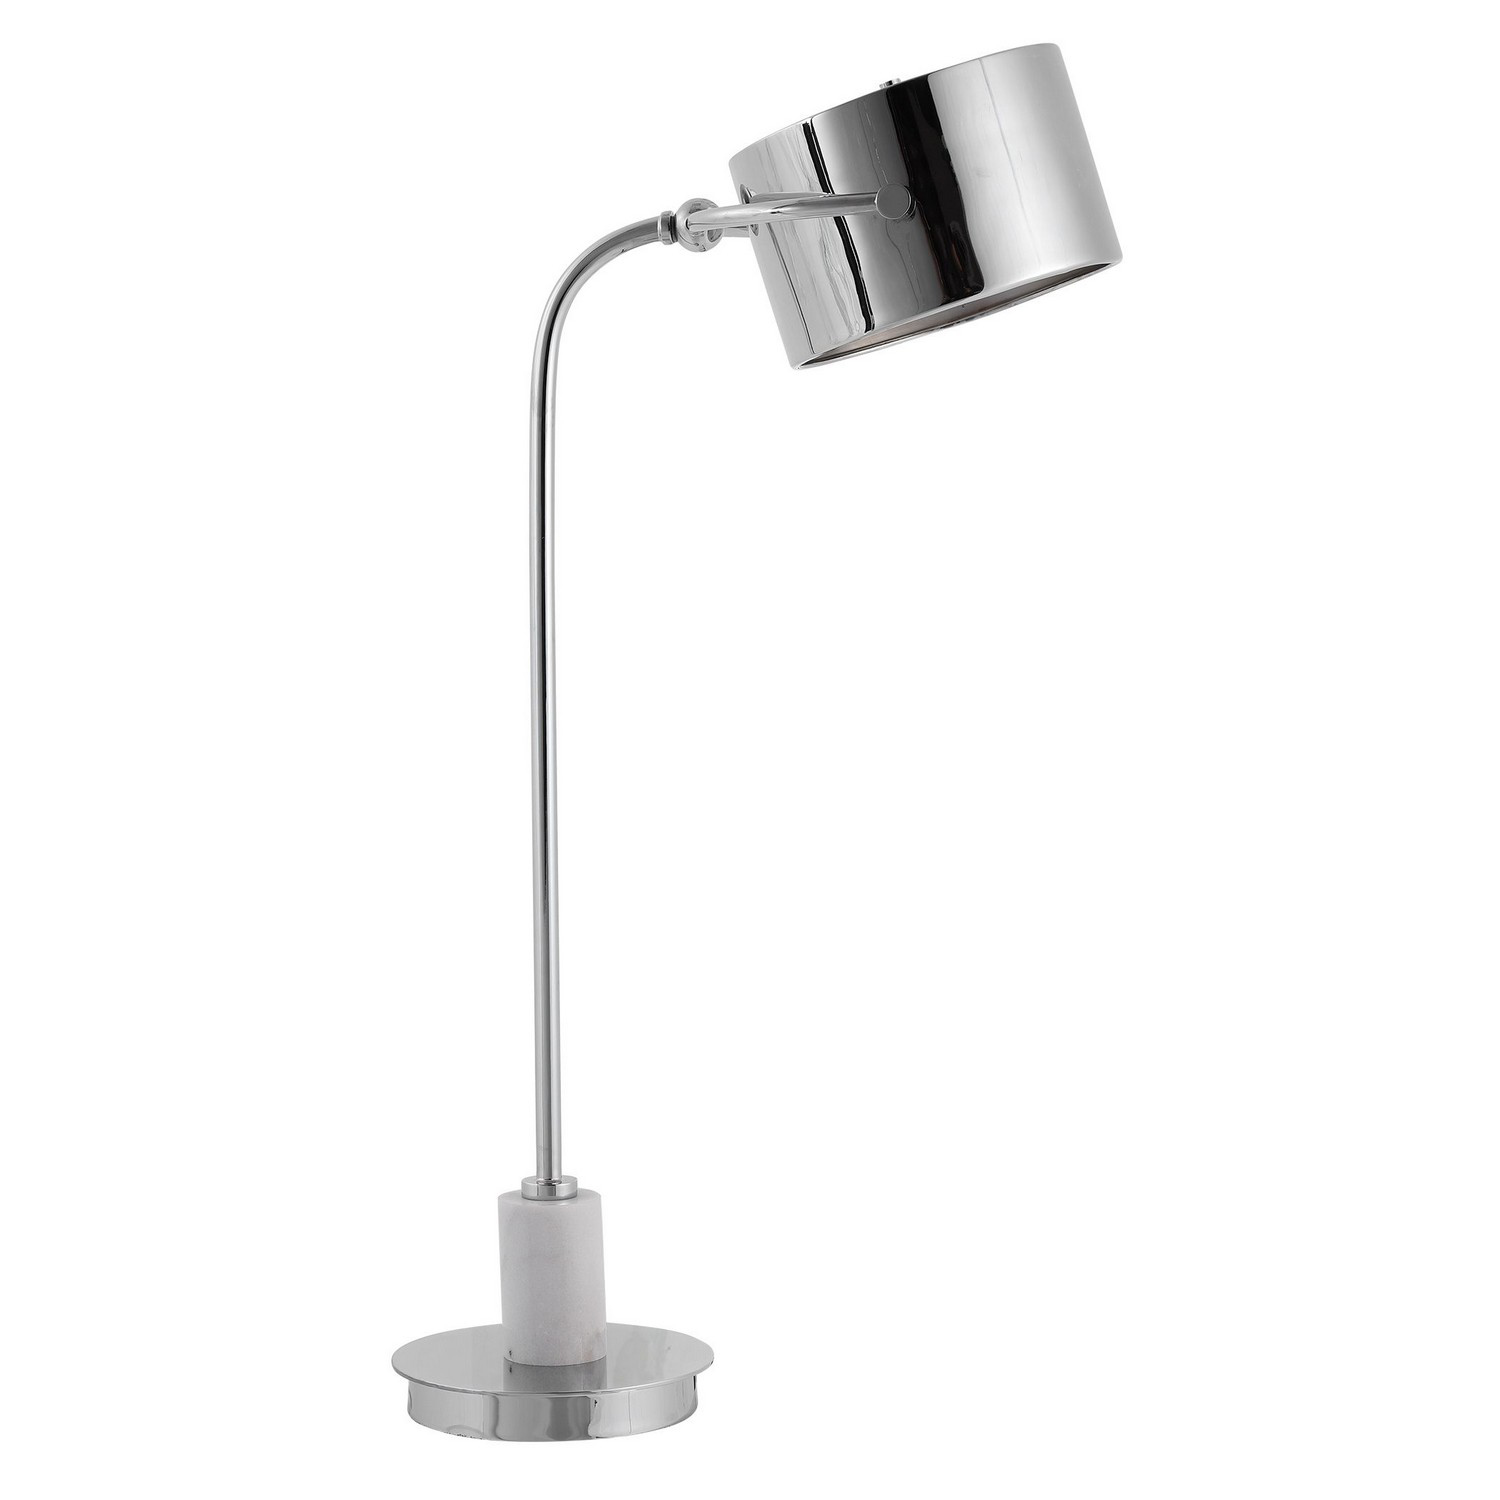 Uttermost Mendel Contemporary Desk Lamp